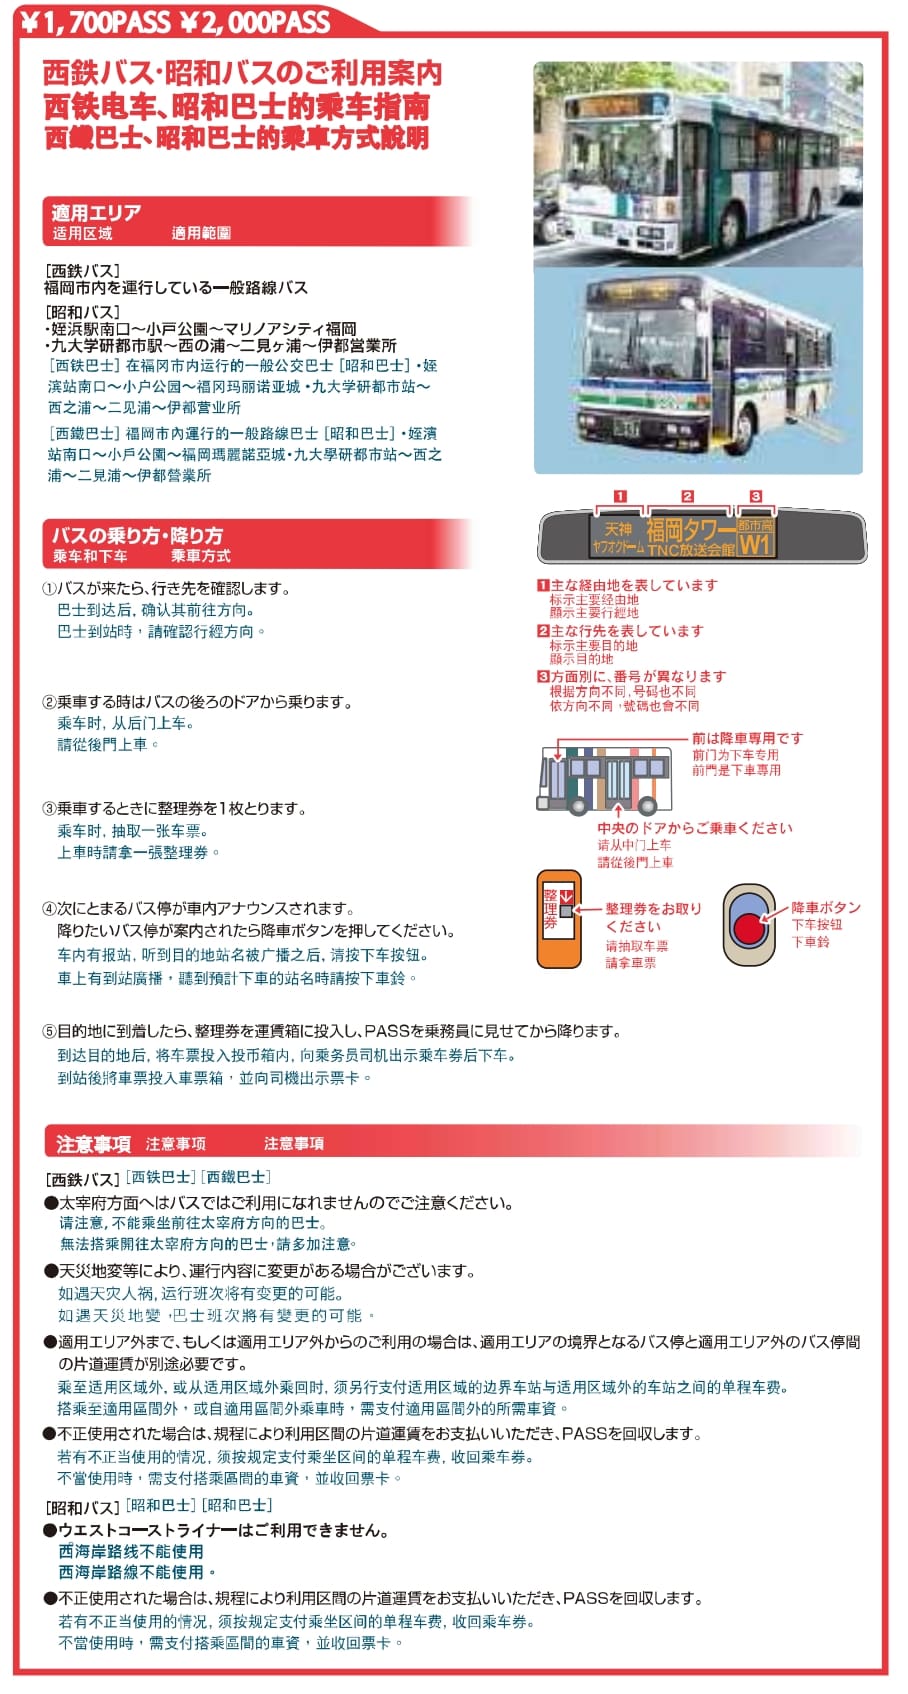 福岡市區交通票券|福岡悠遊卡兩種版本、能搭六種交通工具